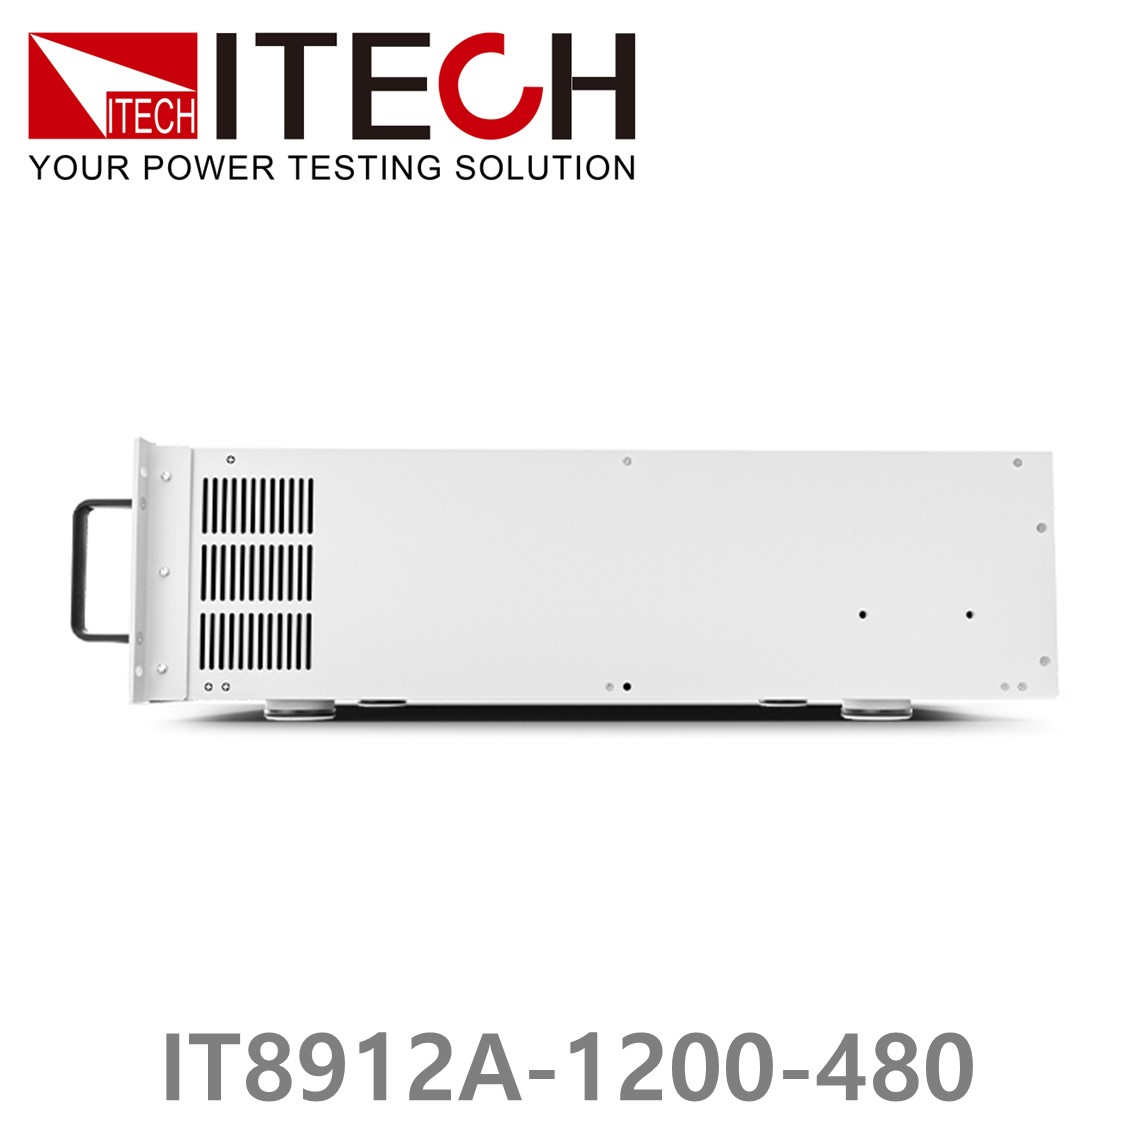 [ ITECH ] IT8912A-1200-480  고성능 고전력 DC 전자로드 1200V/480A/12kW (8U)